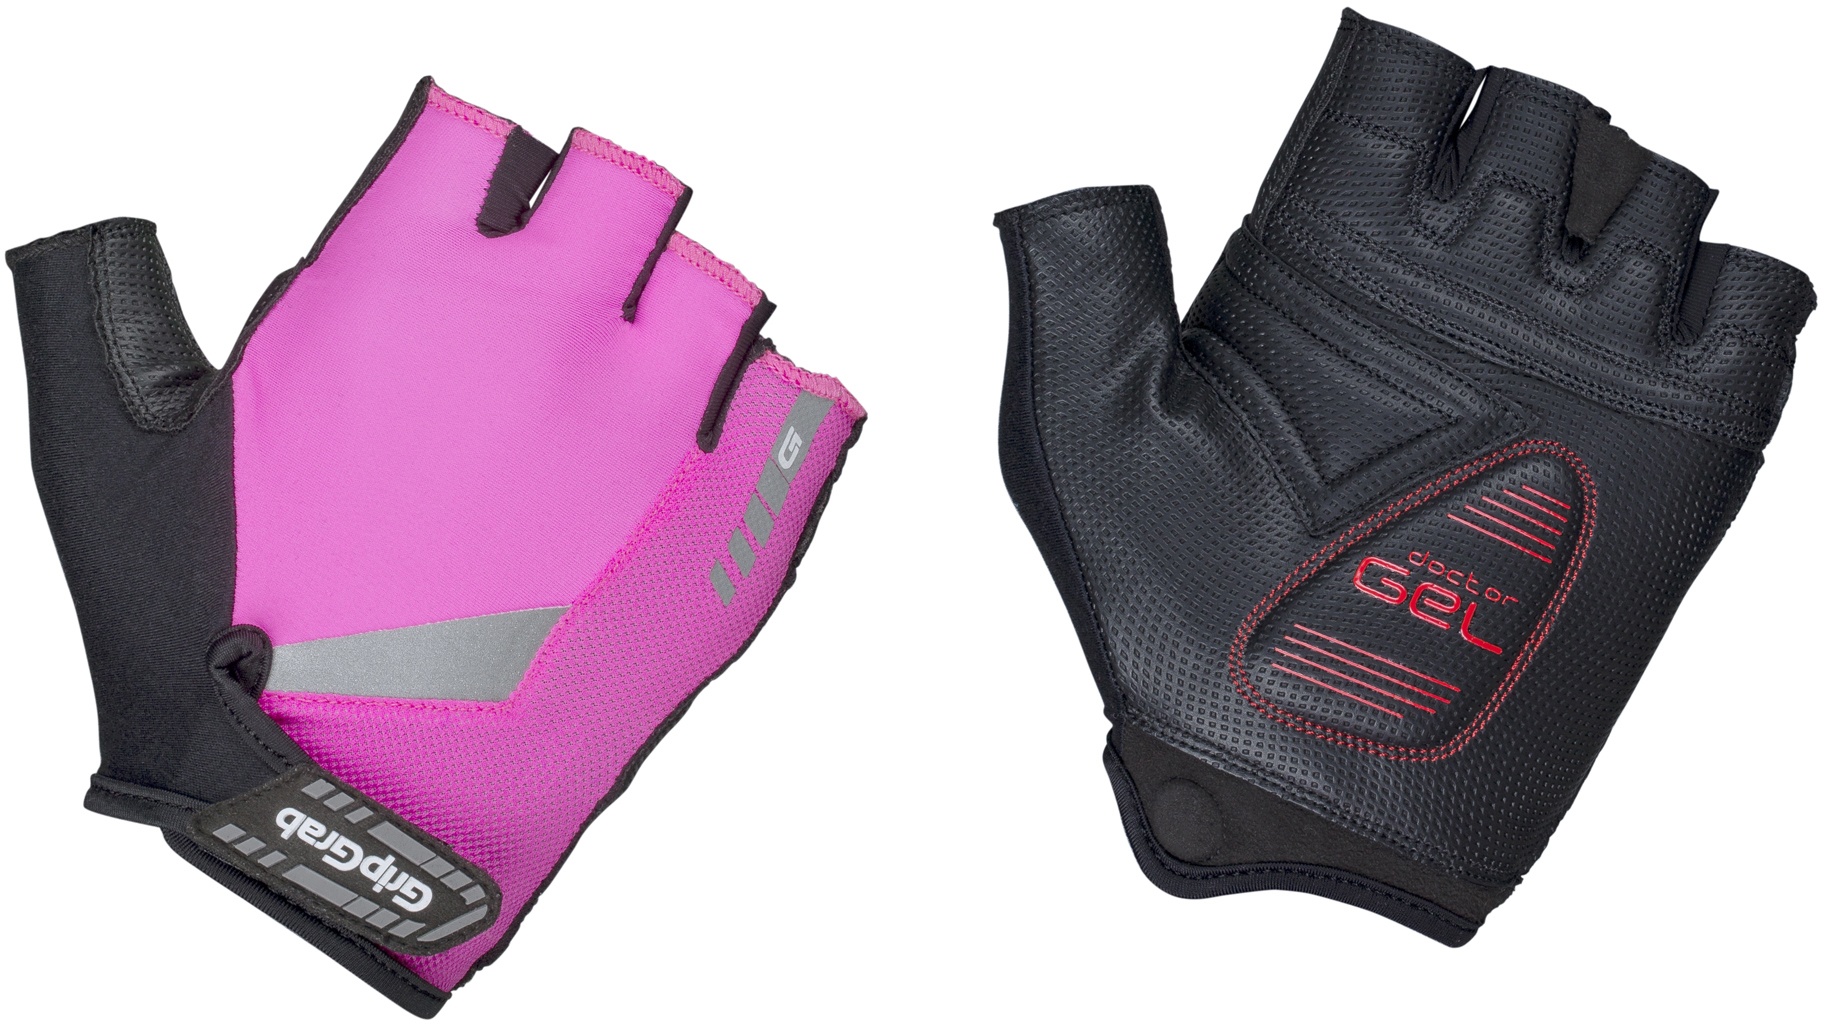 Beklædning - Cykelhandsker - ProGel Hi-Vis Polstret Kortfingret handsker - Hi-Vis Pink